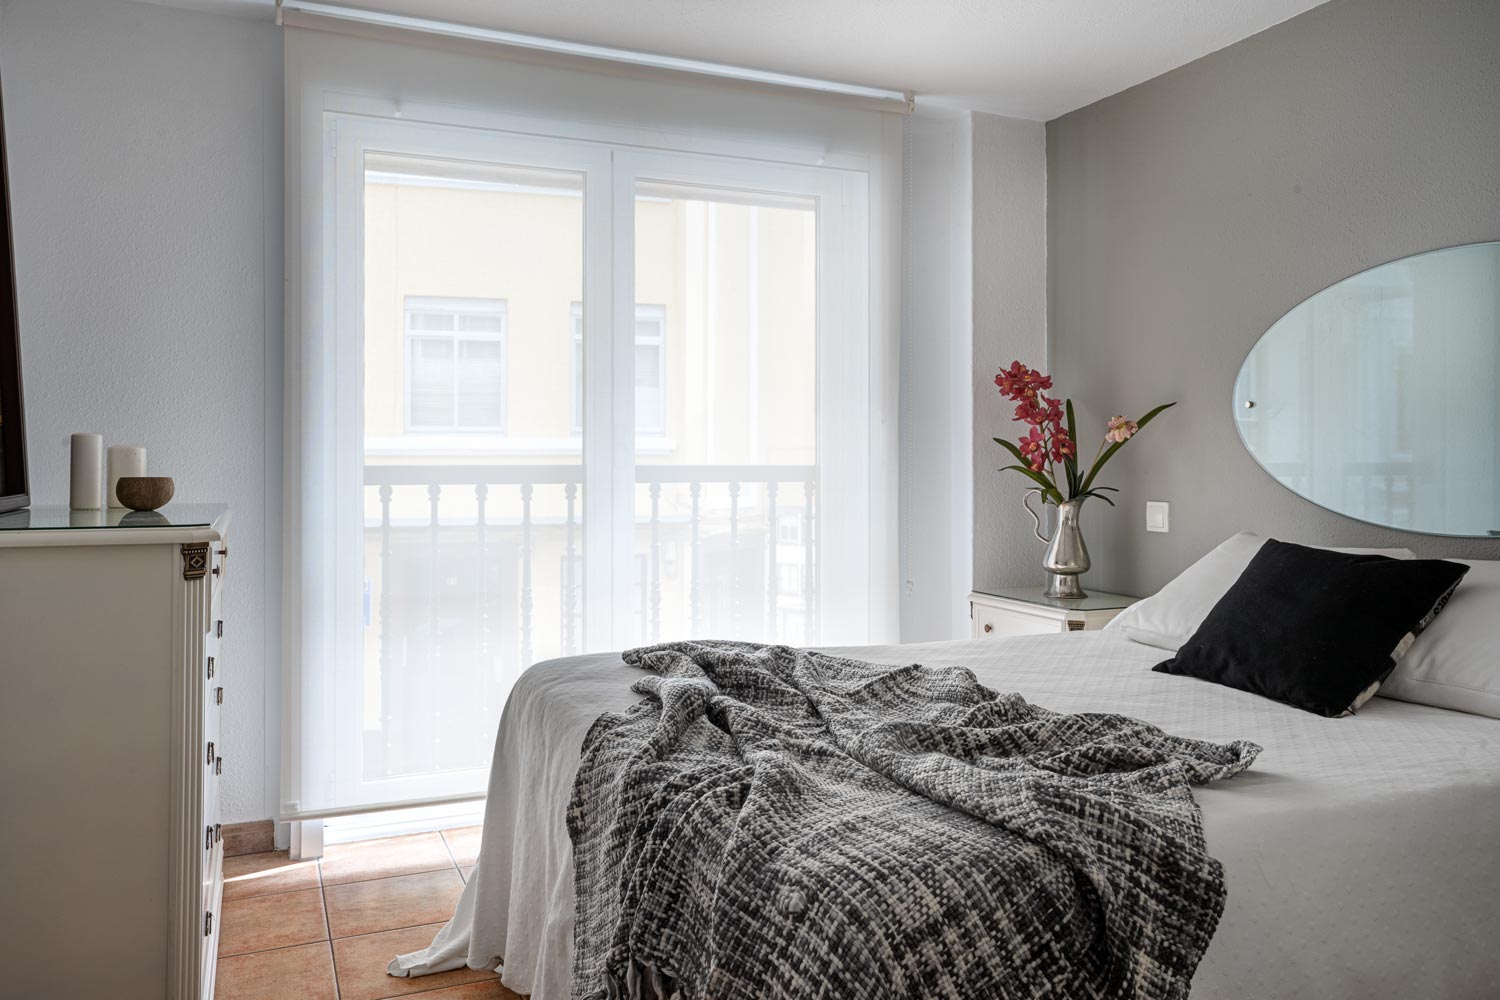 Dormitorio preparado con Home Staging con cama de matrimonio: Miramos hacia la ventana. Sobre la cama hay cojines y una manta y en la mesilla un jarrón plateado con flores